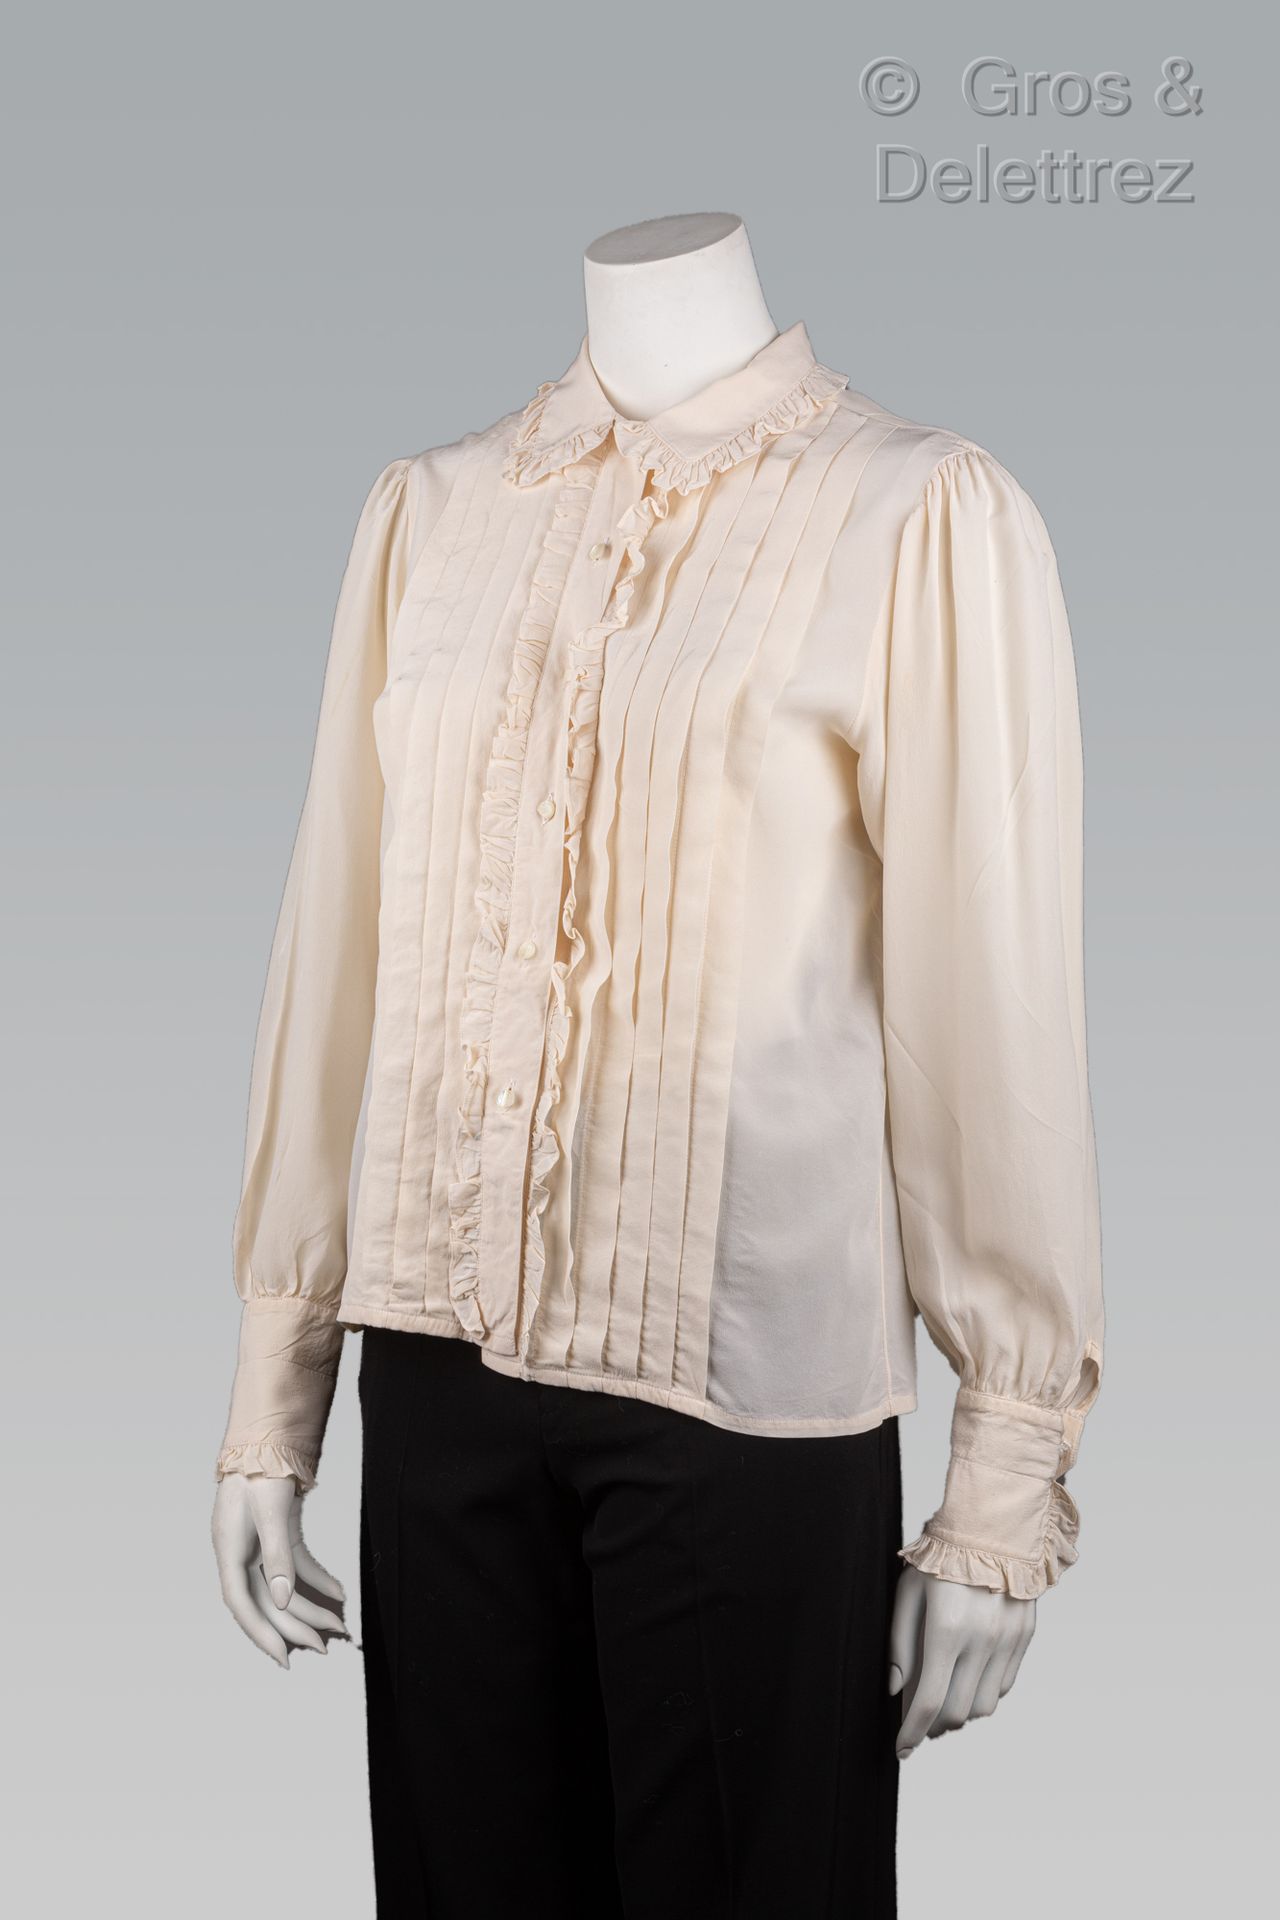 Null 卡尔-拉格斐的香奈儿

约1988年

衣服包括一件带褶皱的赤褐色丝质绉绸上衣，小领，单排扣，前襟打褶，长袖，和一条白色棉质裙子，两个口袋。白色的爪子&hellip;